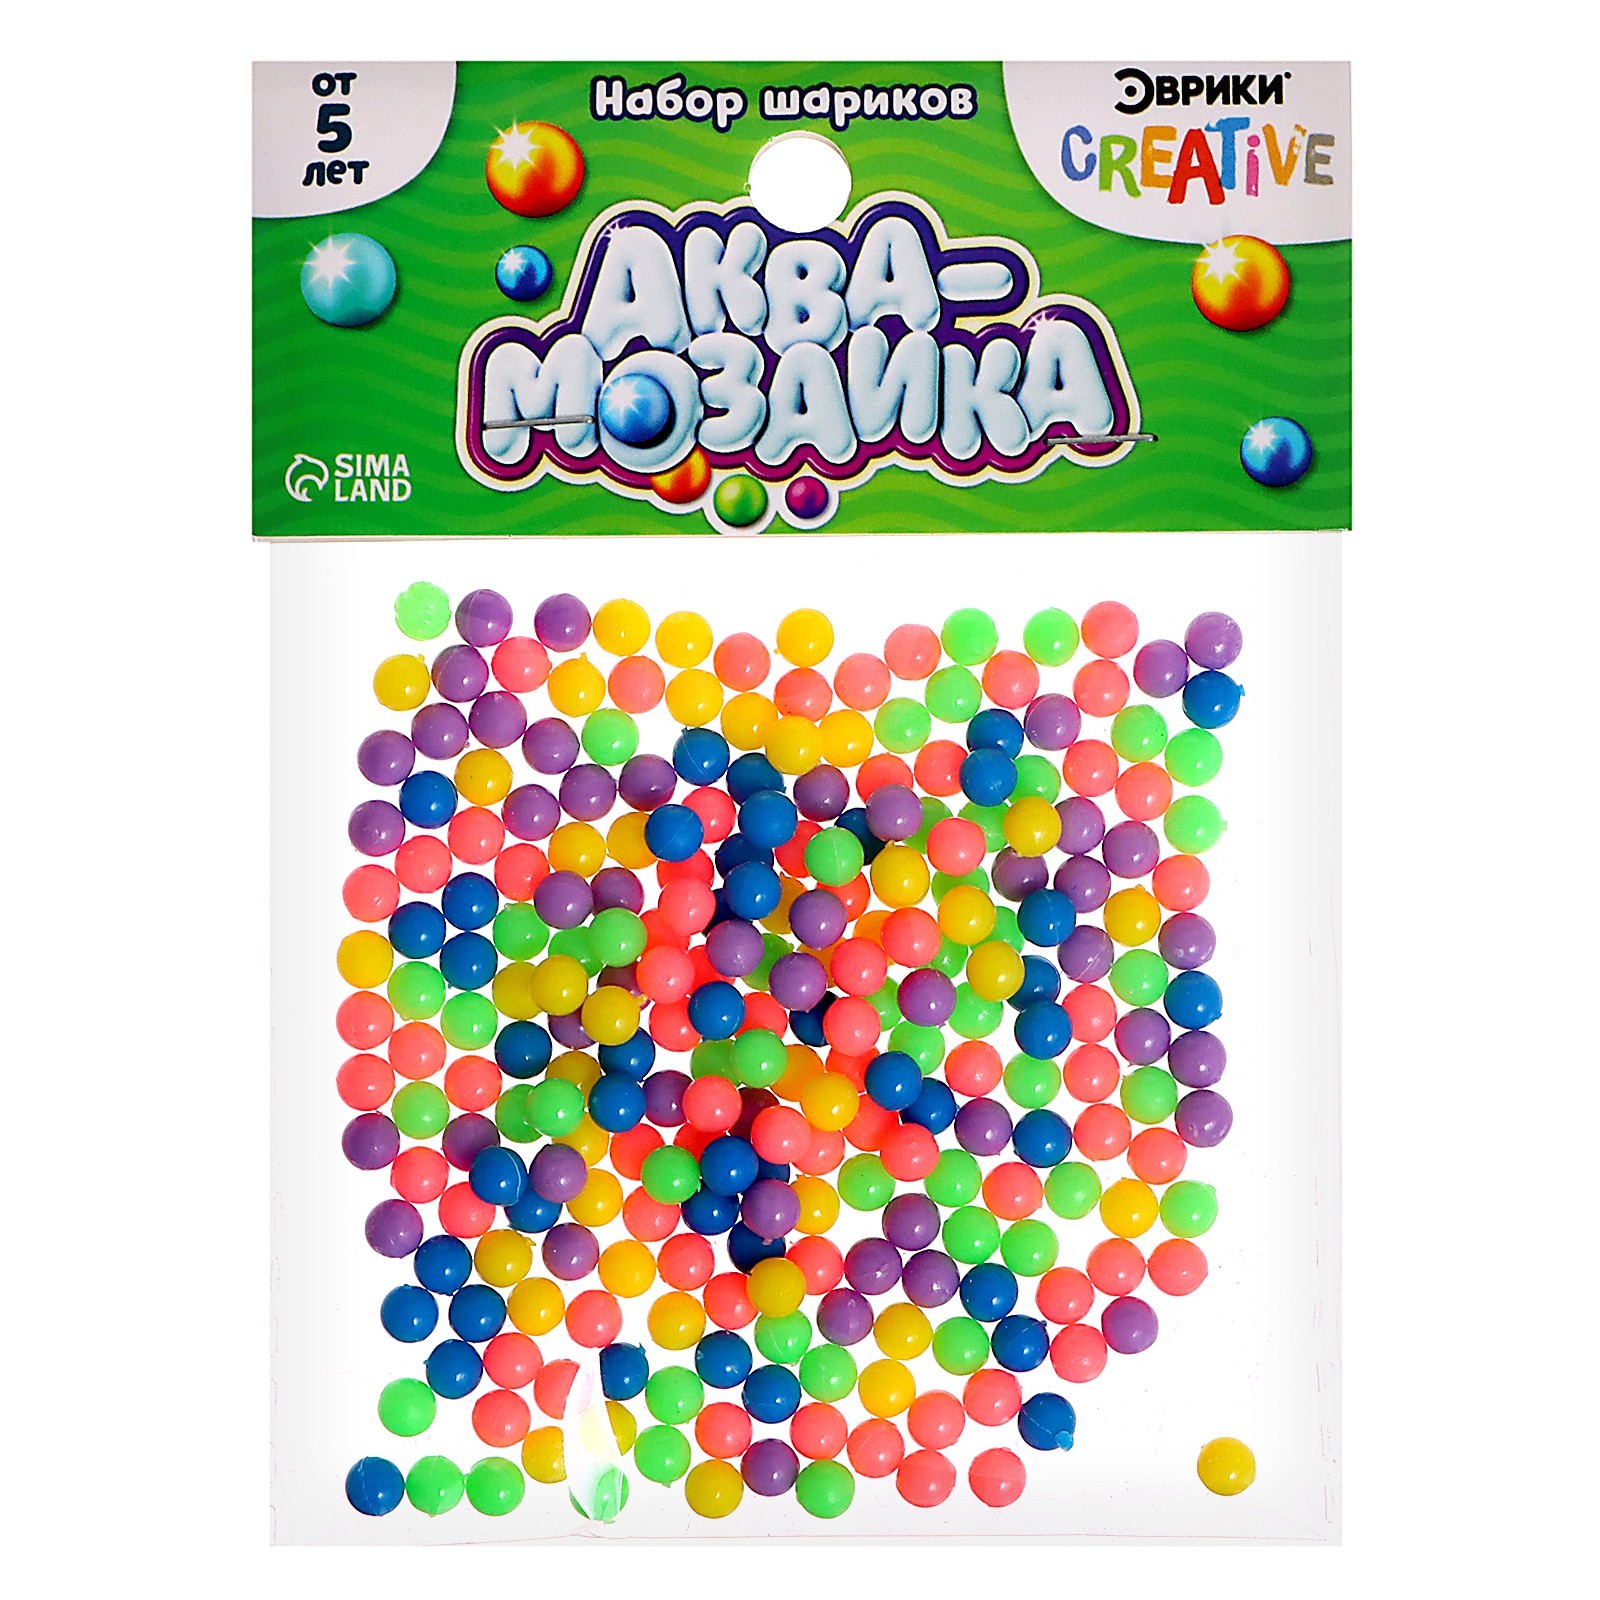 ЭВРИКИ Аквамозаика Набор шариков, 250 штук, зеленые   5502595 (Фото 1)